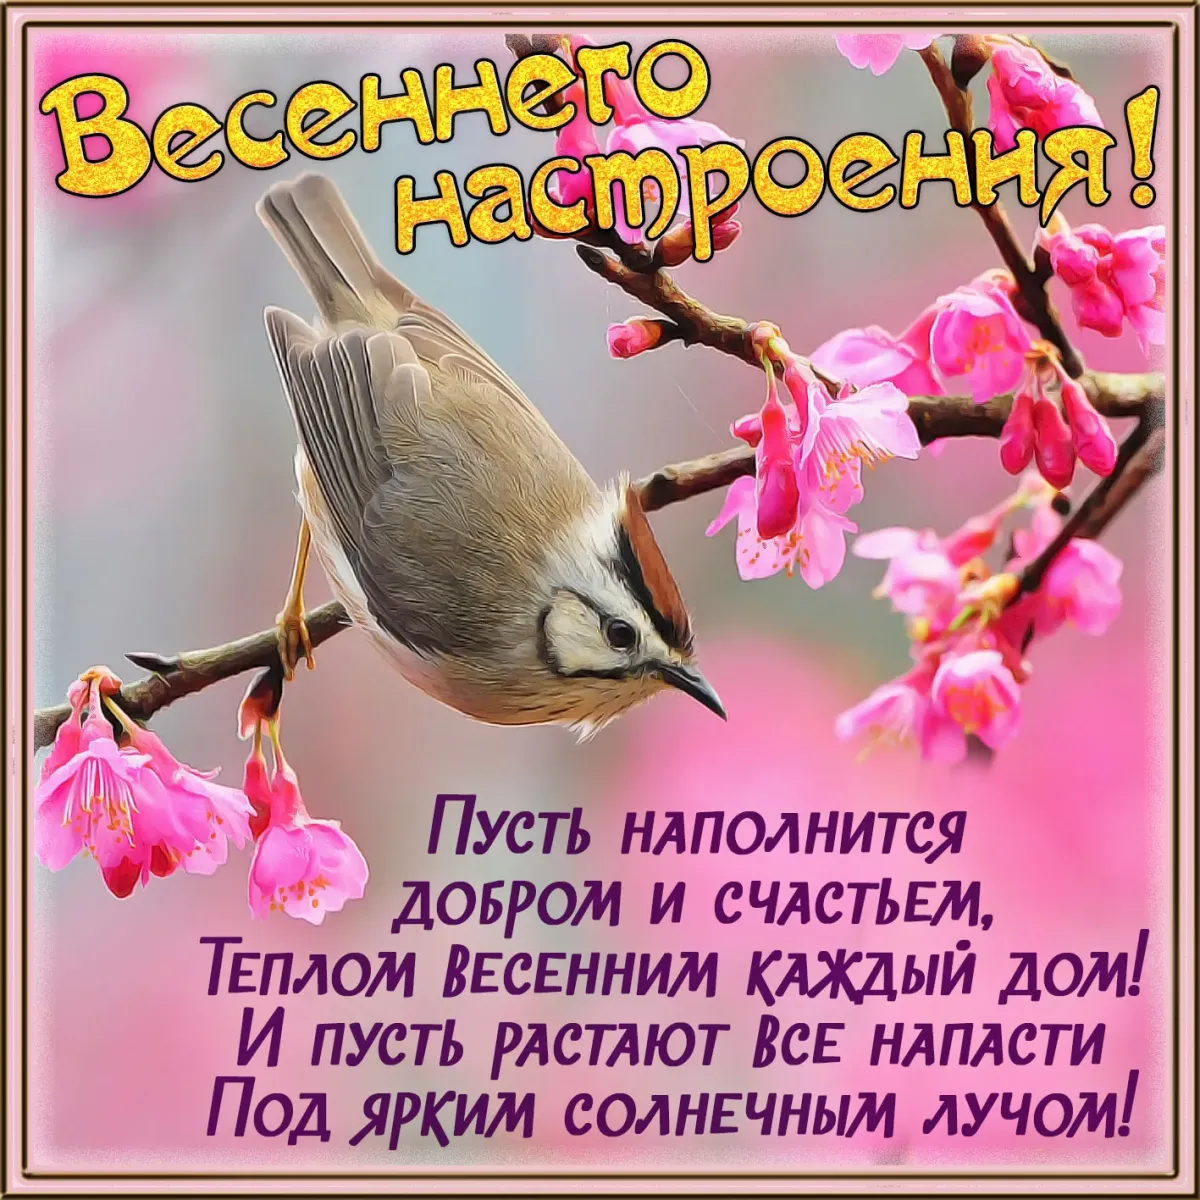 Пусть с весной придет. Поздравление с добрым весенним утром. Весенние пожелания. Пожелания с добрым весенним утром. Поздравления с добрым утром весны.